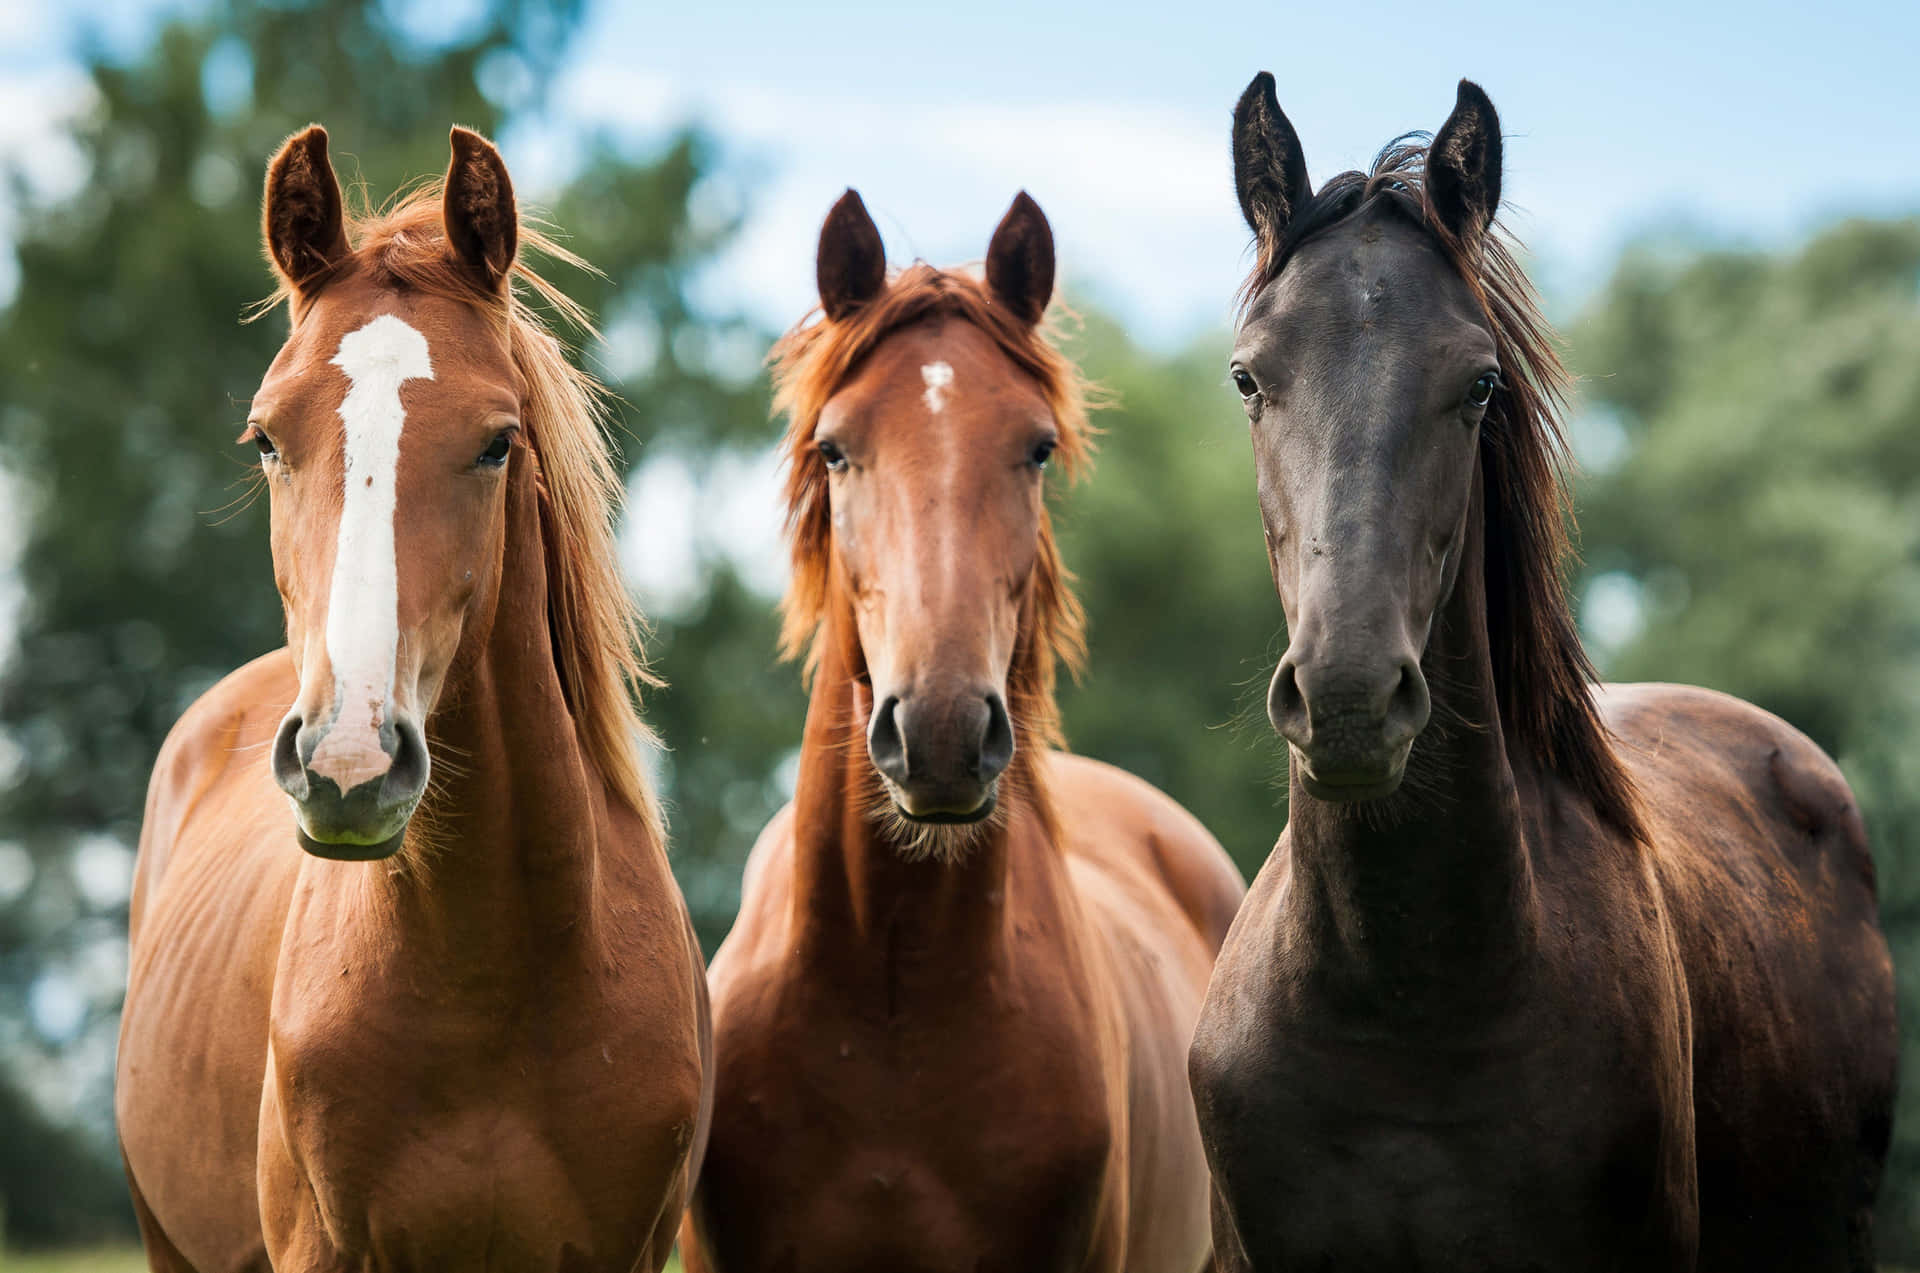 Three Horses Portrait Outdoors Wallpaper